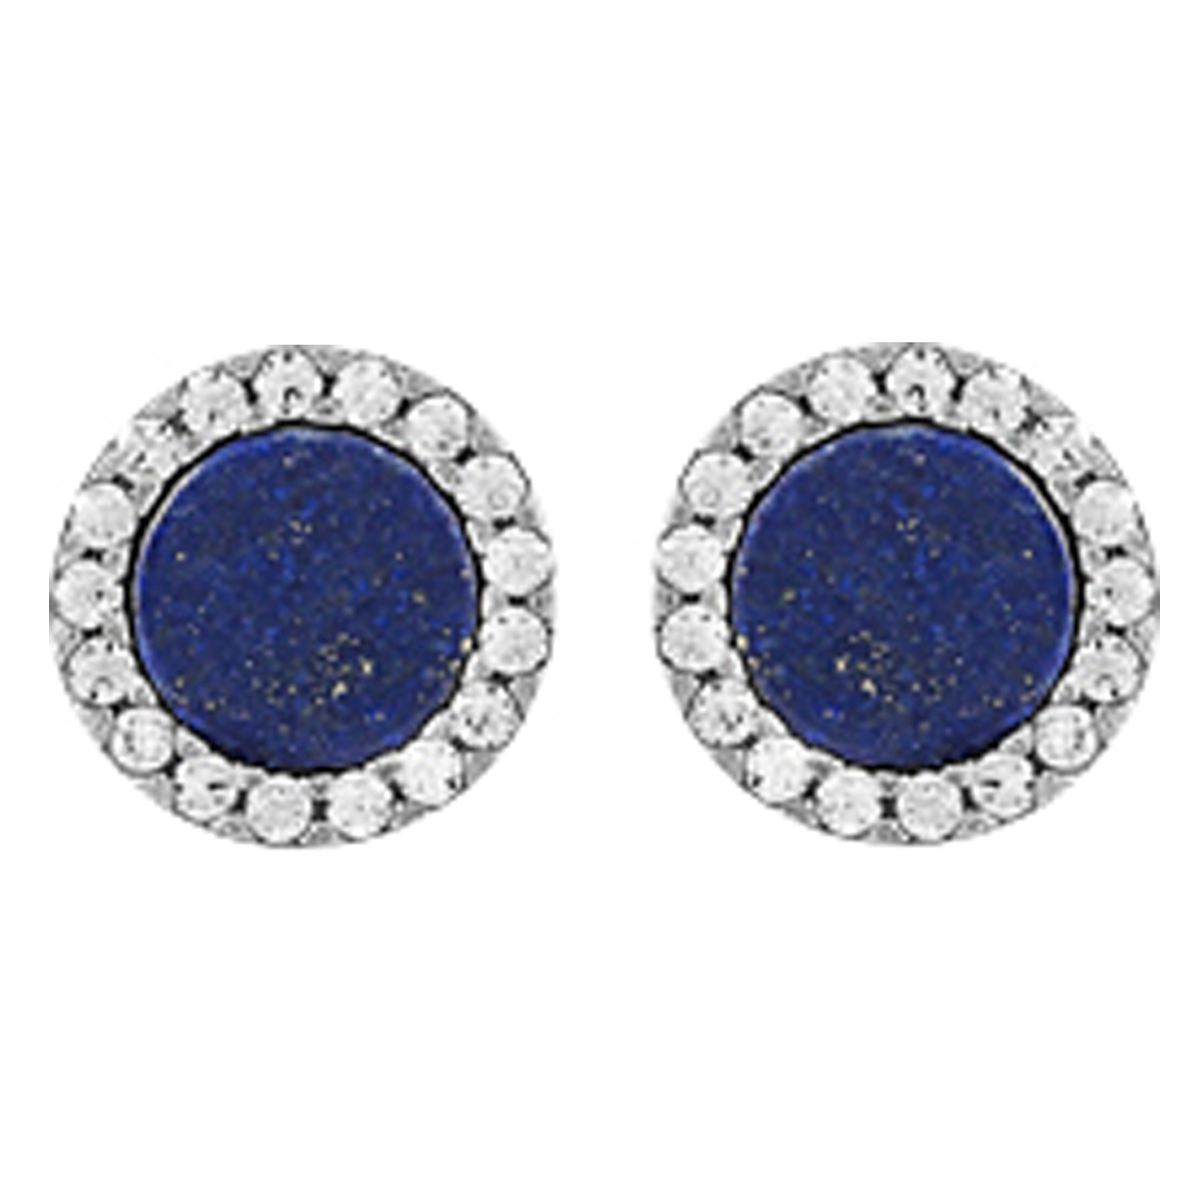 Boucles argent \'Sissi\' bleu lapis lazuli blanc argenté (rhodié) - 6 mm - [Q7914]